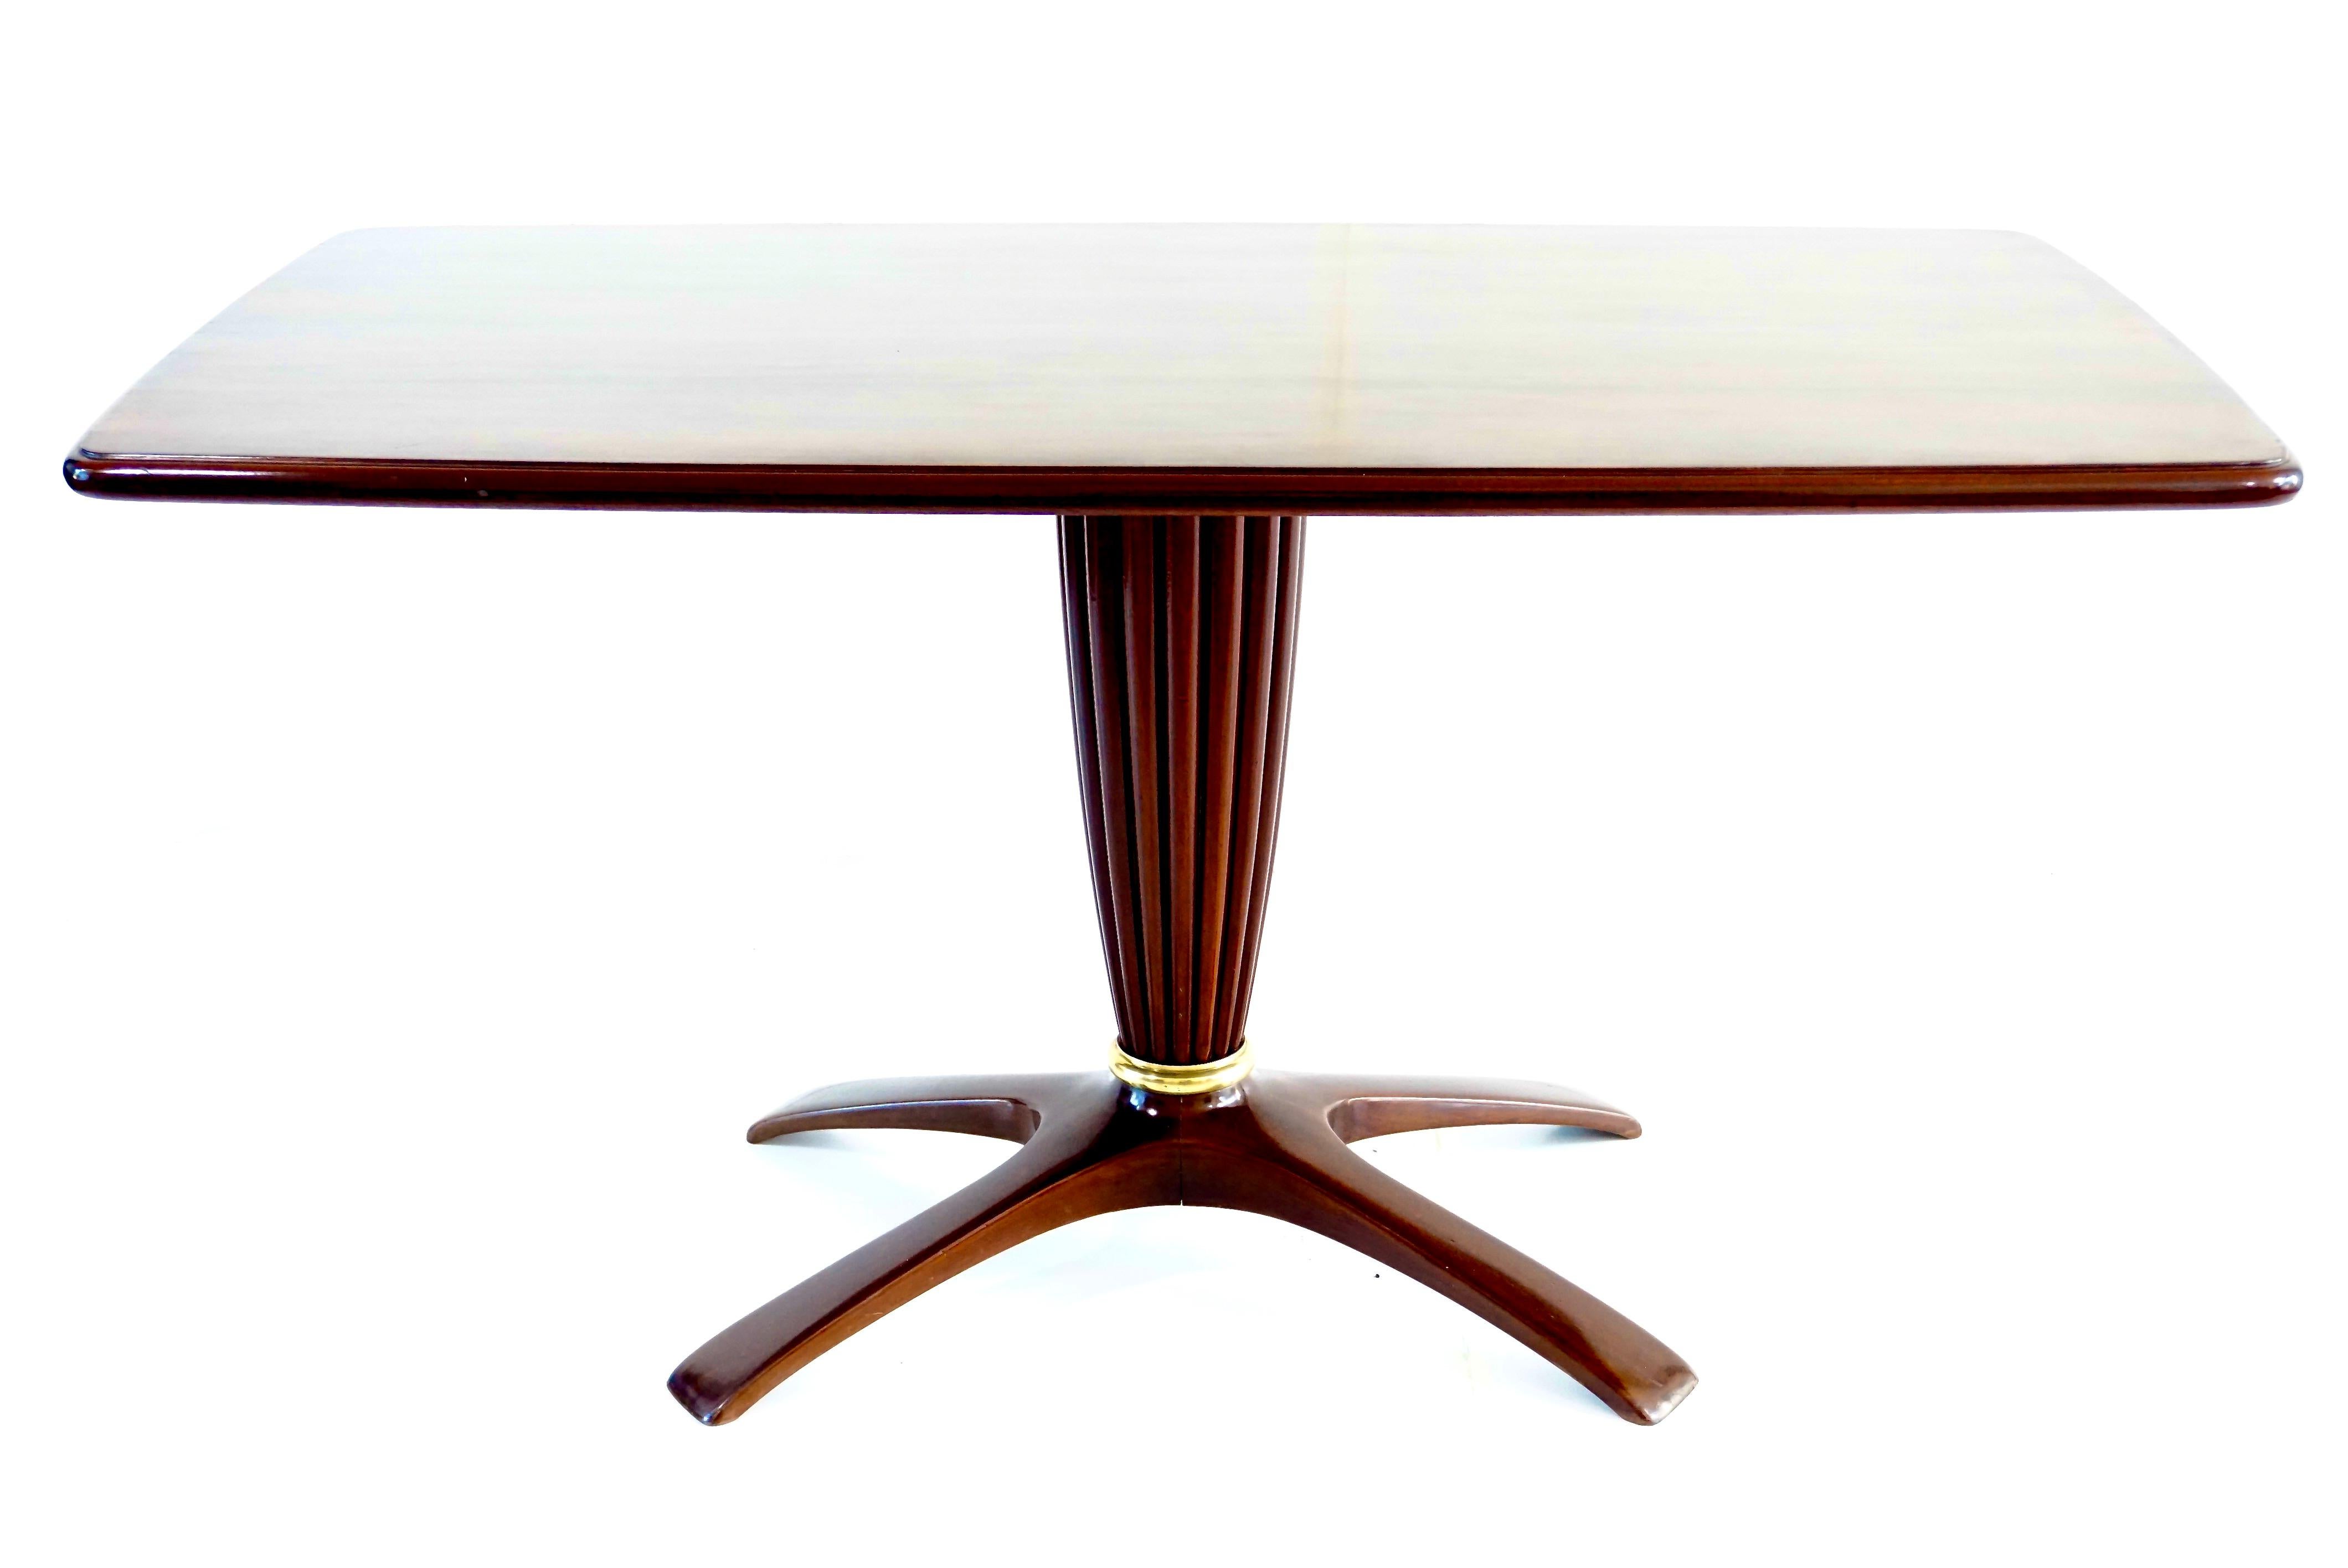 Seltener Tisch aus Palisanderholz, entworfen von Saverio Jannace und hergestellt von Jannace & A. Kovacs, um 1950
wichtige zentrale Fuß geschnitzt und abgeschrägte Kante des Tisches
messingdetail für einen großen zentralen Ring am Sockel
vier